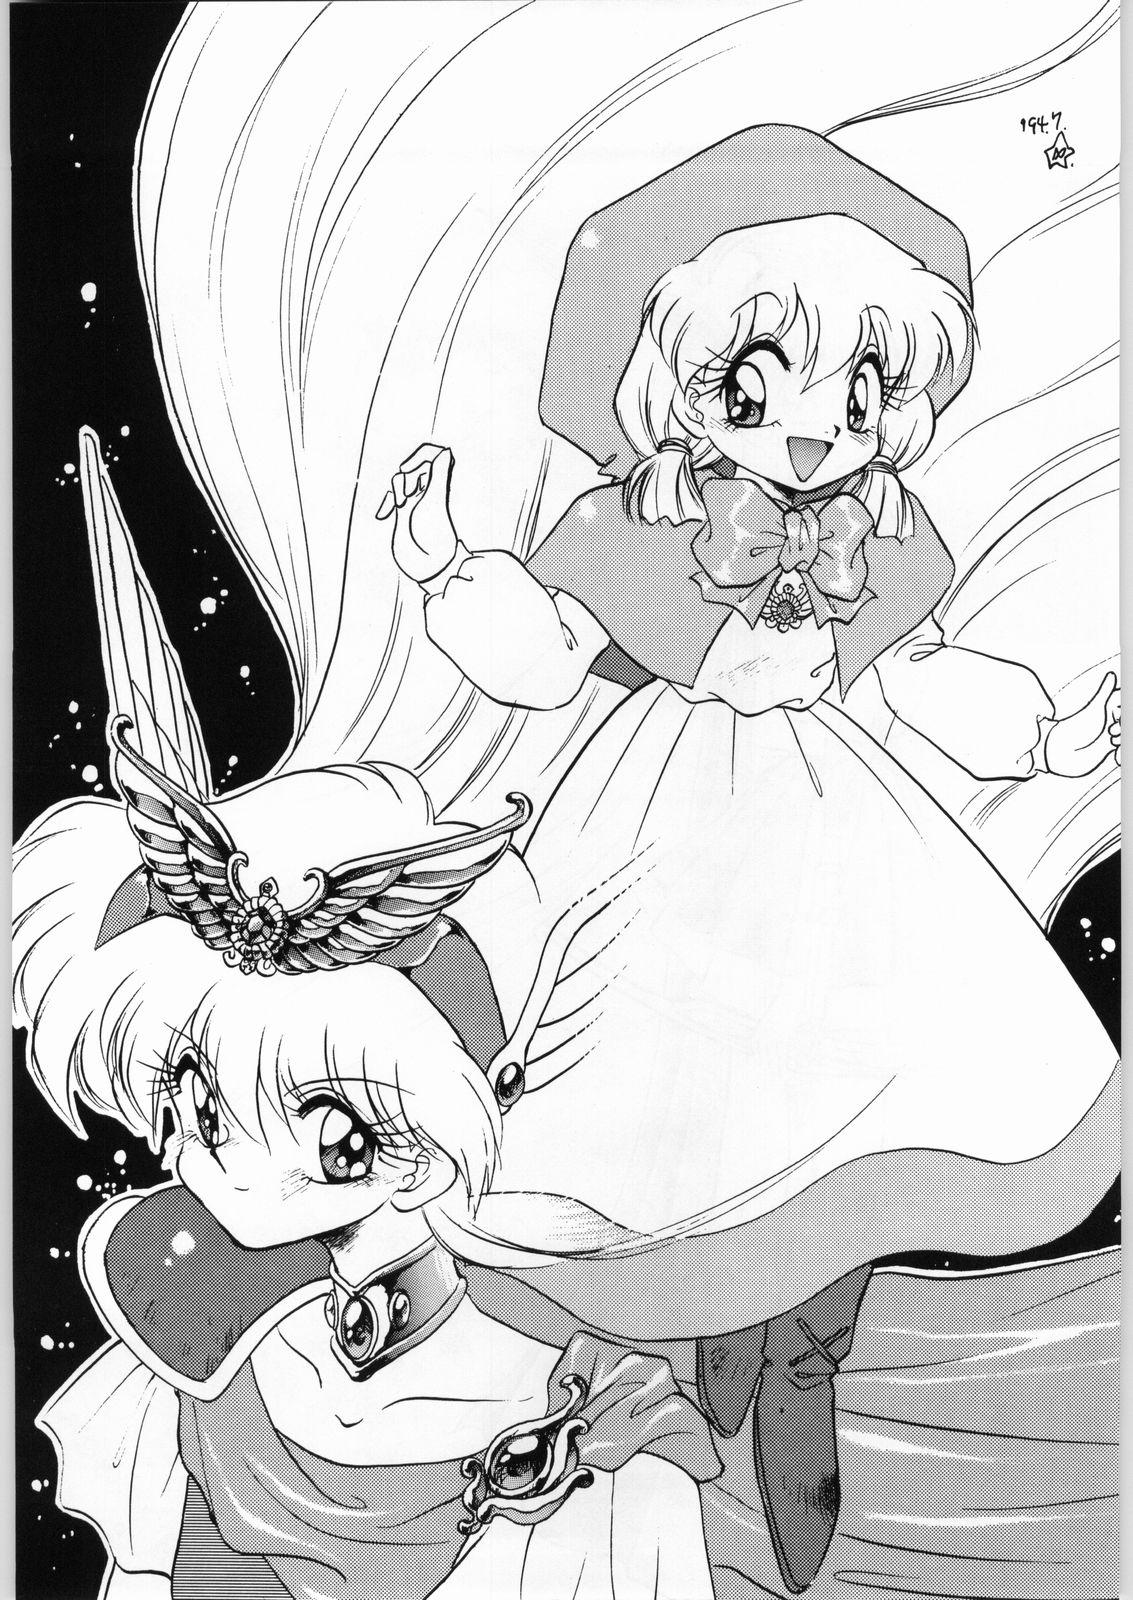 Fudendo Dance of Princess 3 - Sailor moon Tenchi muyo Akazukin cha cha Minky momo Ng knight lamune and 40 Peituda - Page 4